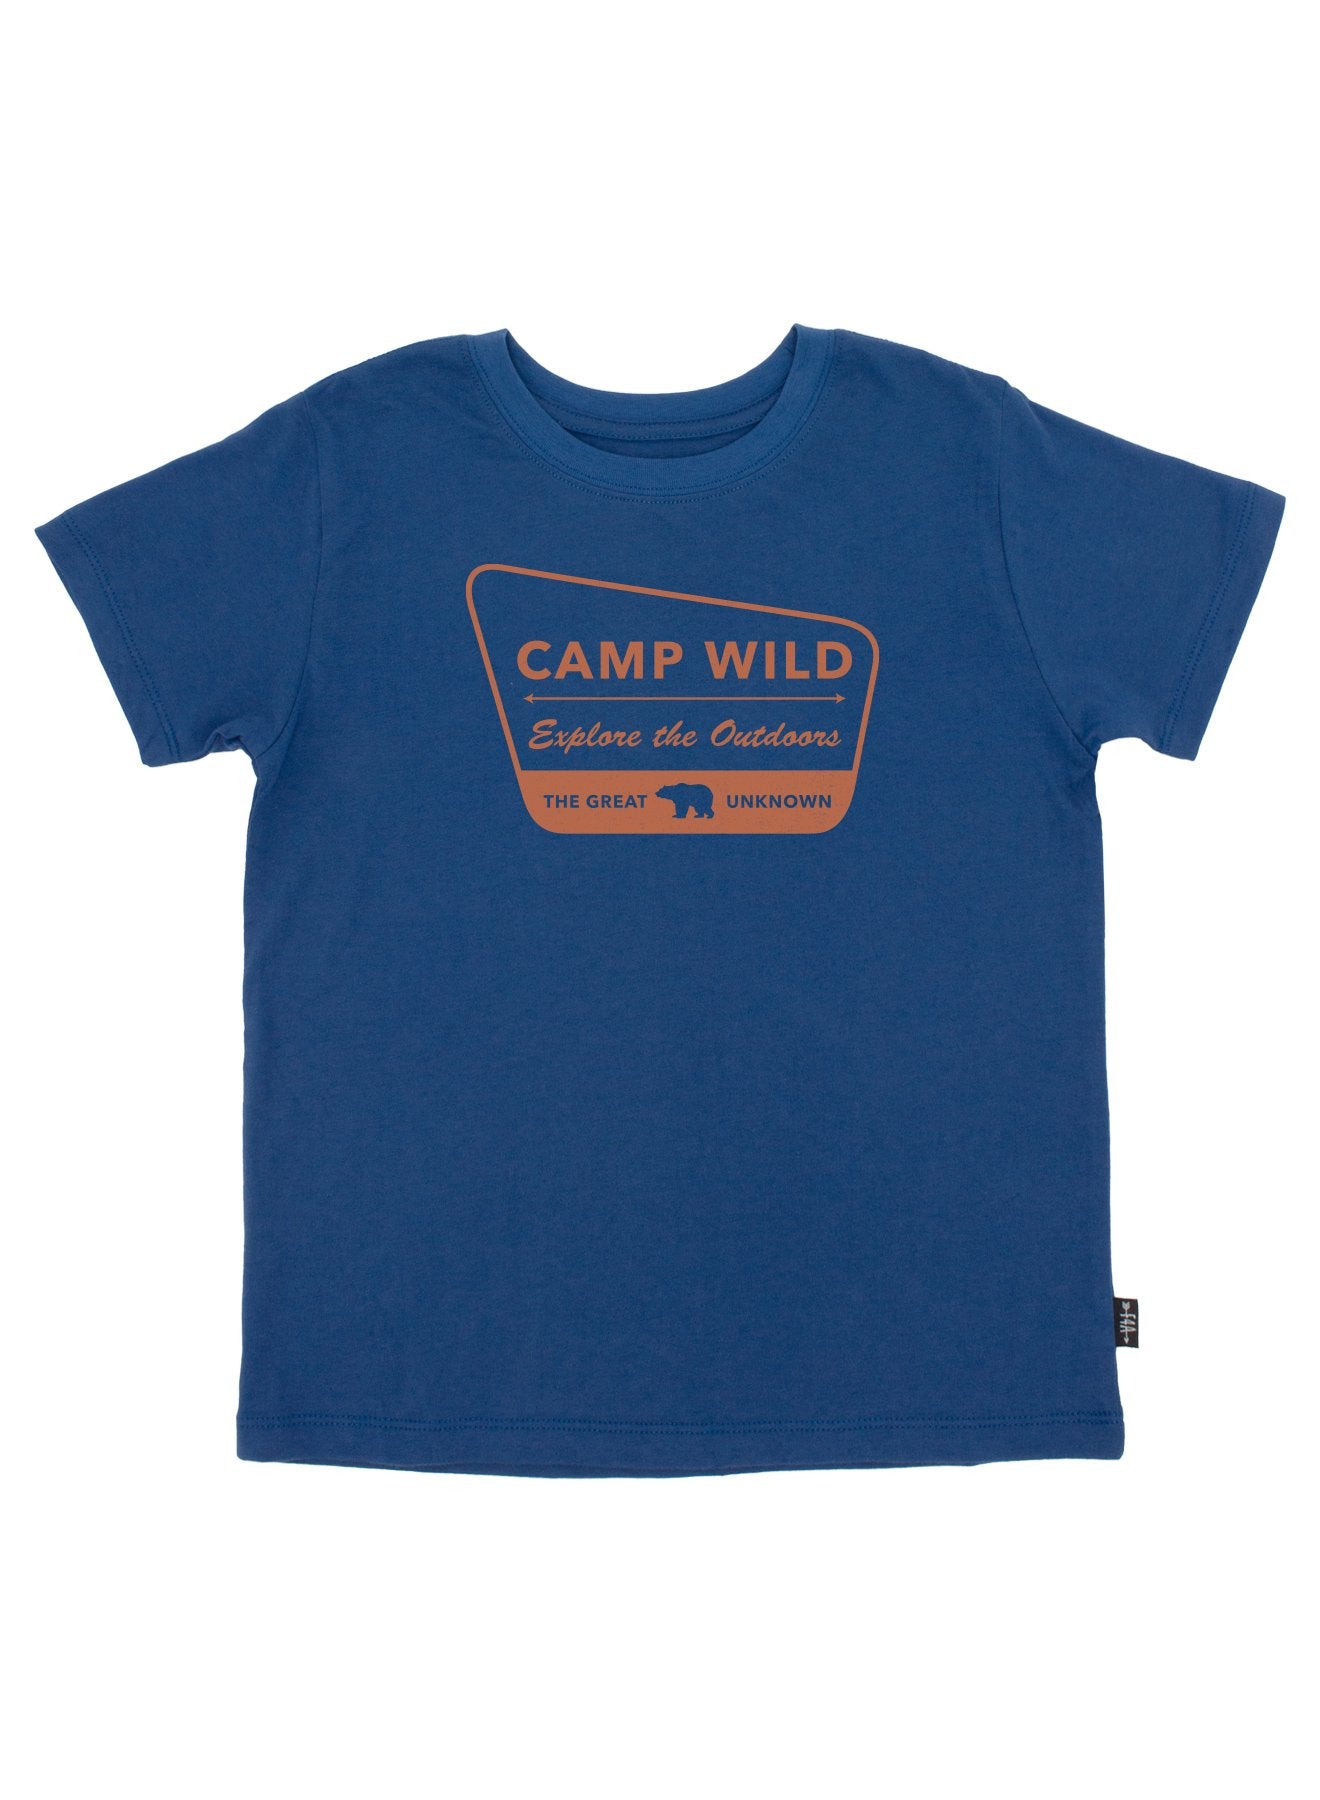 Camp Wild Vintage Tee  - Doodlebug's Children's Boutique